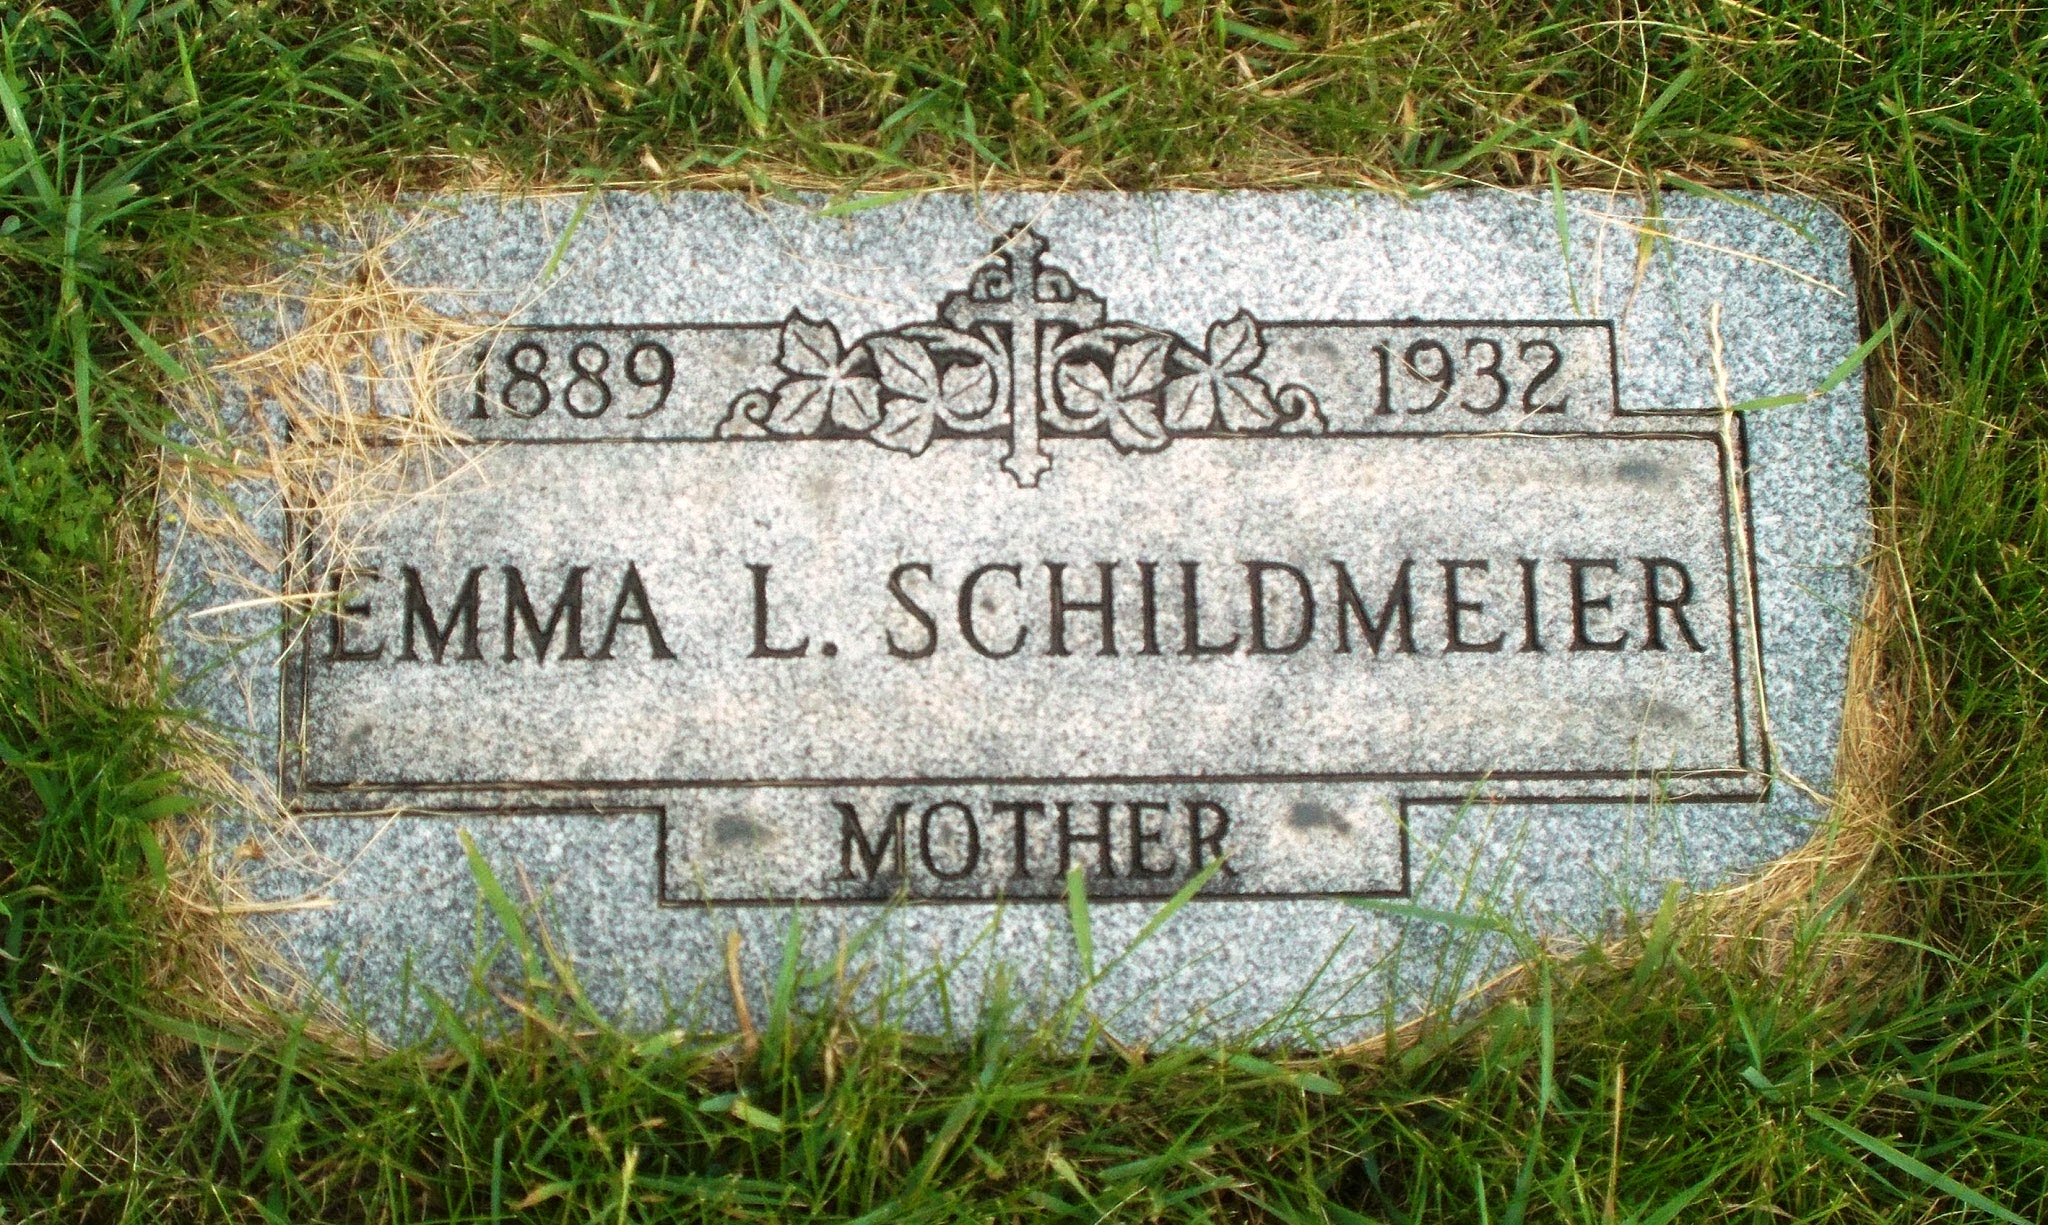 Emma L Schildmeier